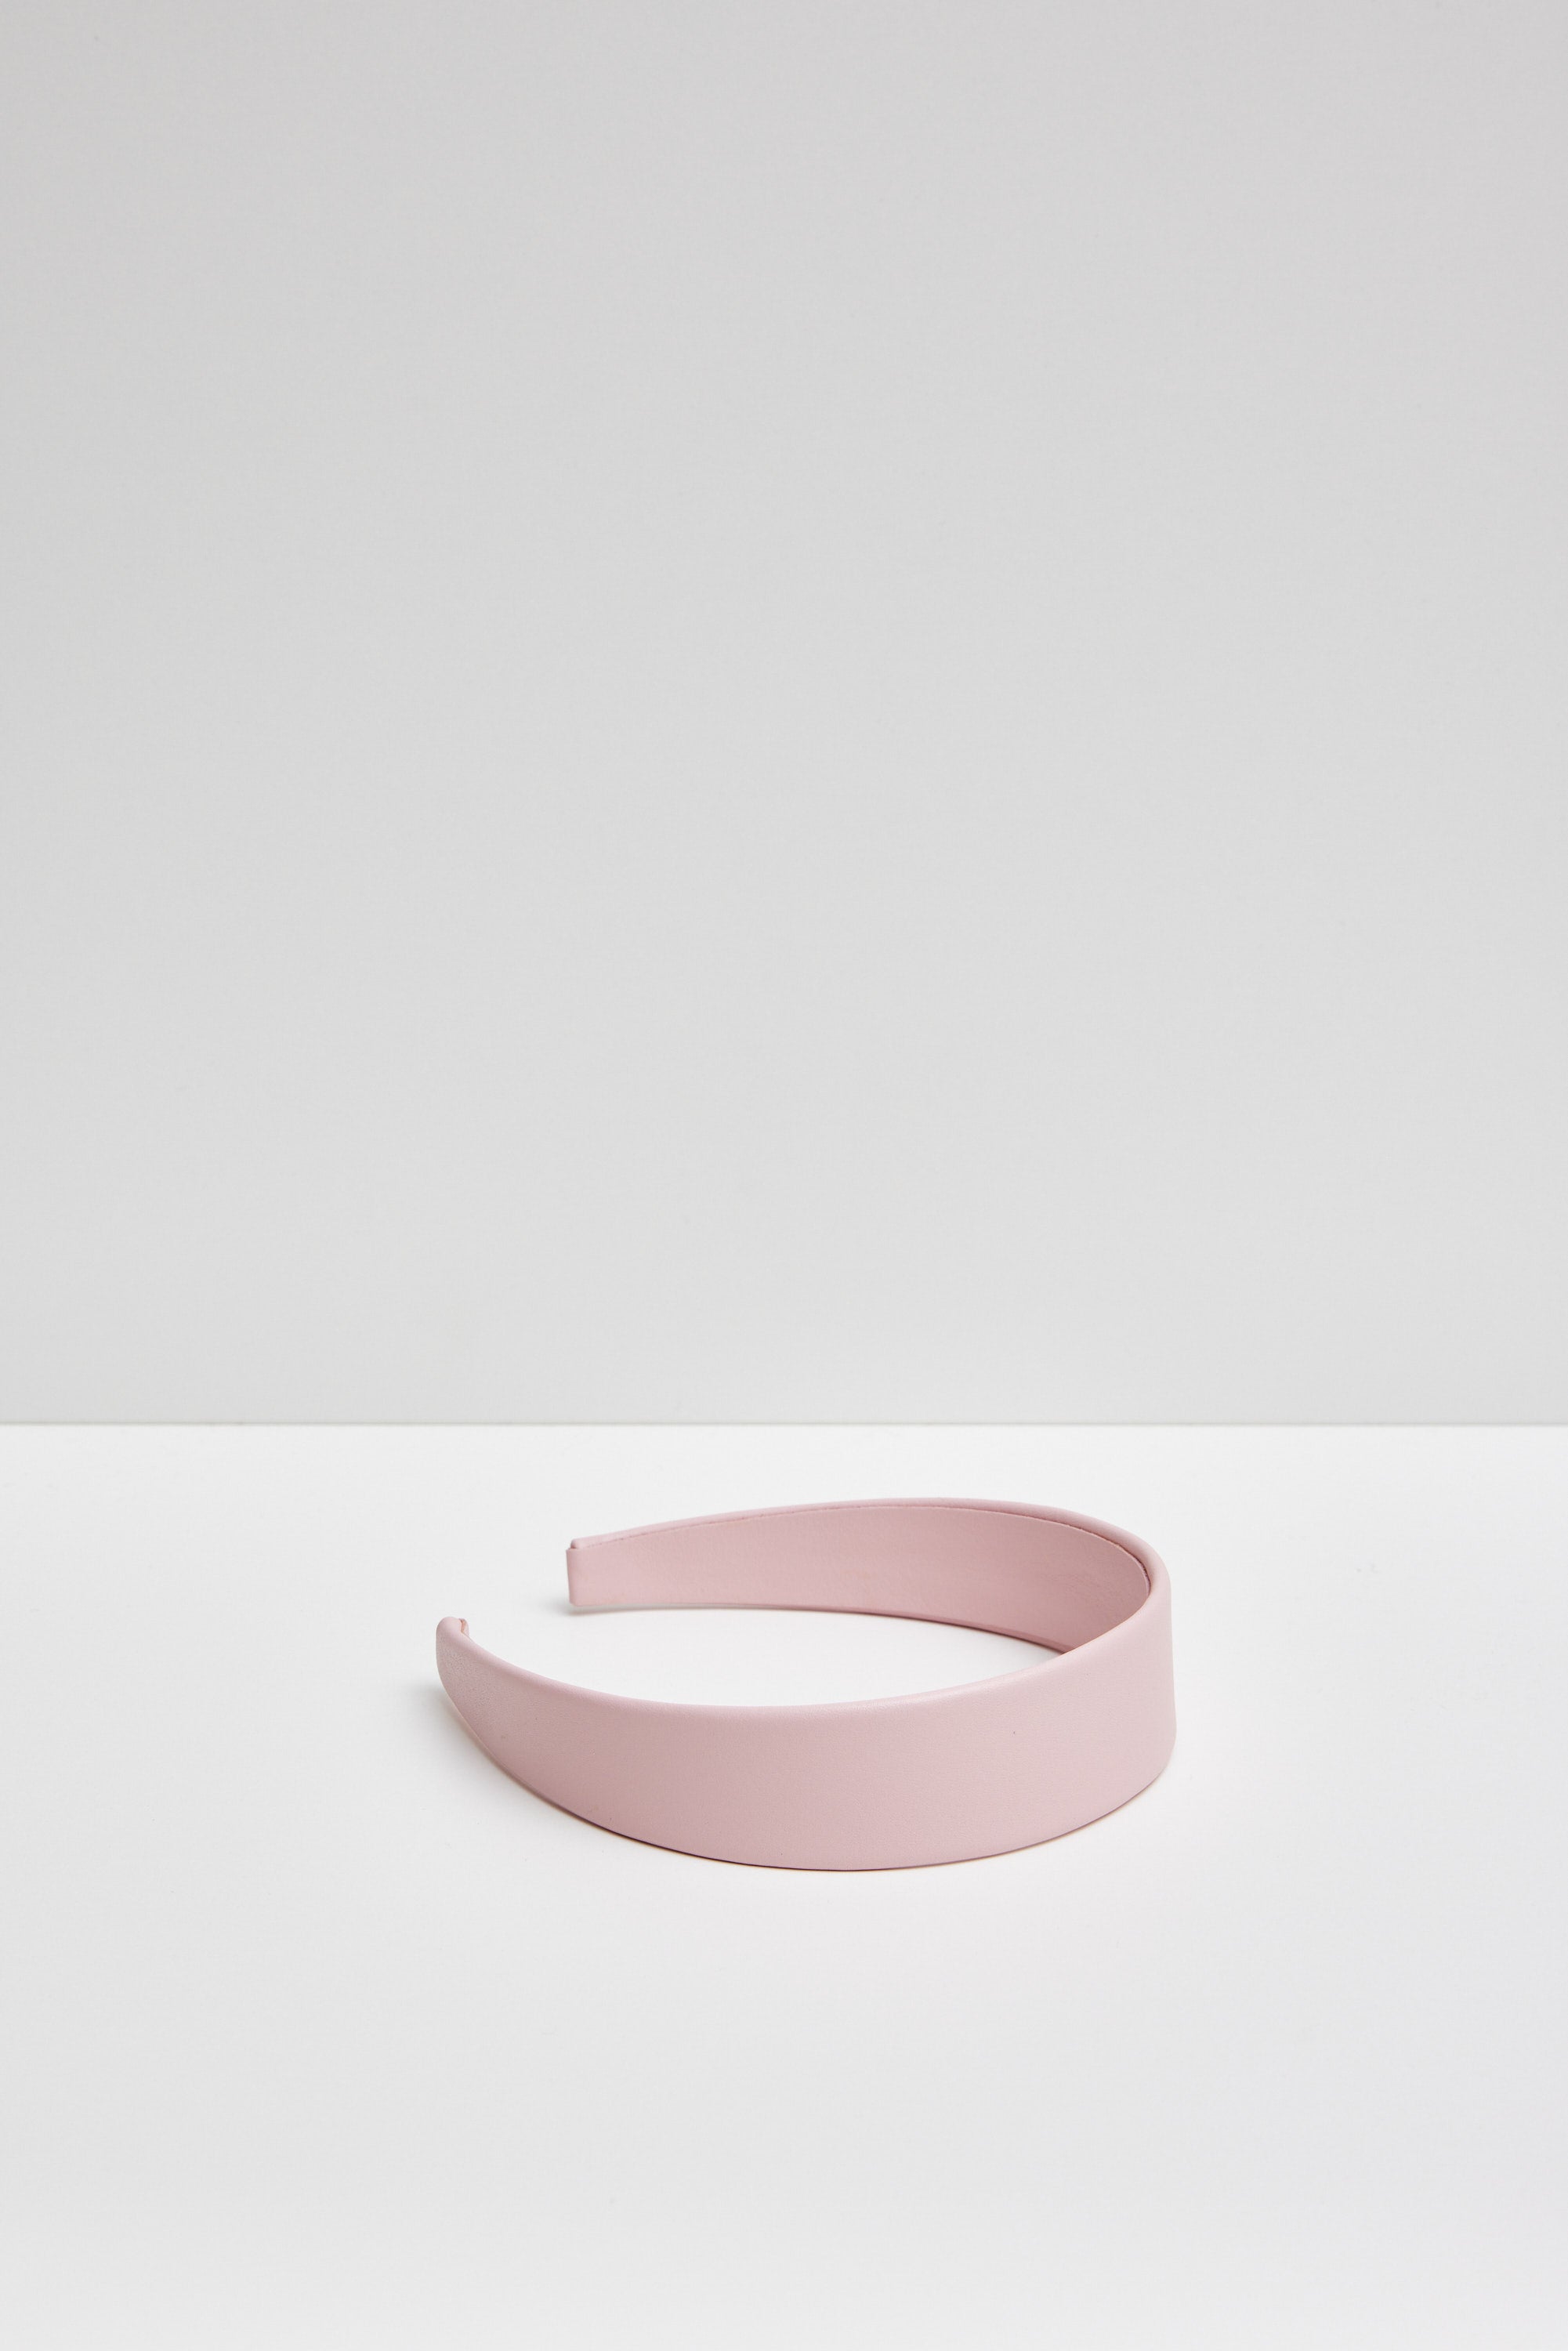 Silken - minimalist leather headband - 4 colour options